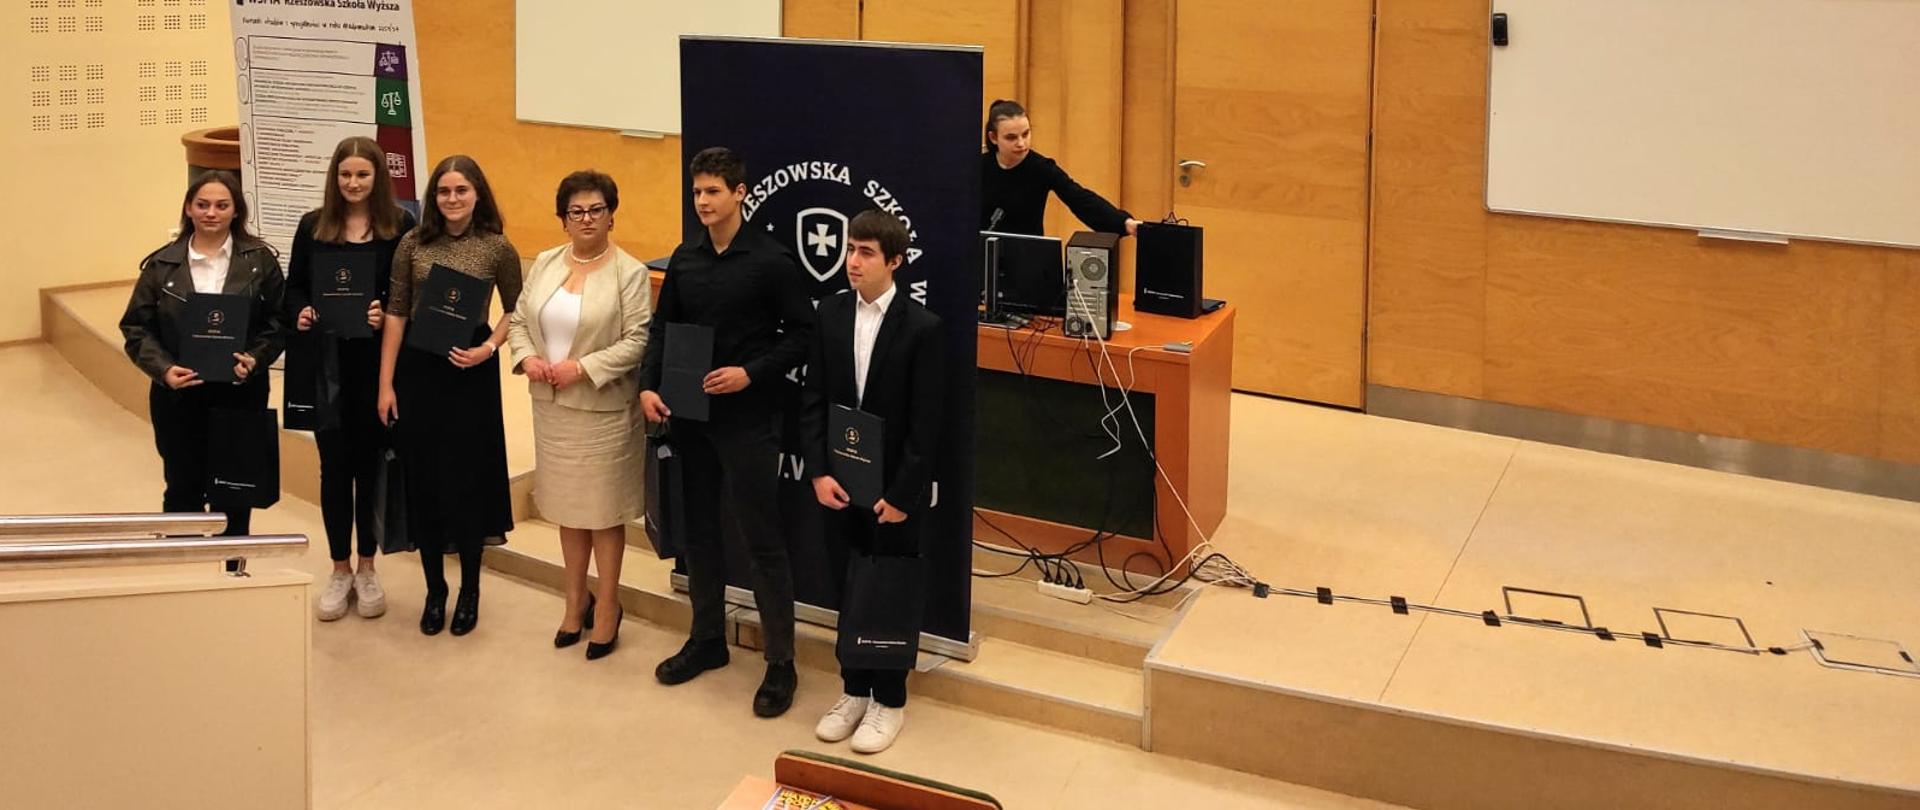 Uczniowie LO Kołaczyce zostali laureatami XVI Edycji Konkursu Wiedzy o Prawach Człowieka 